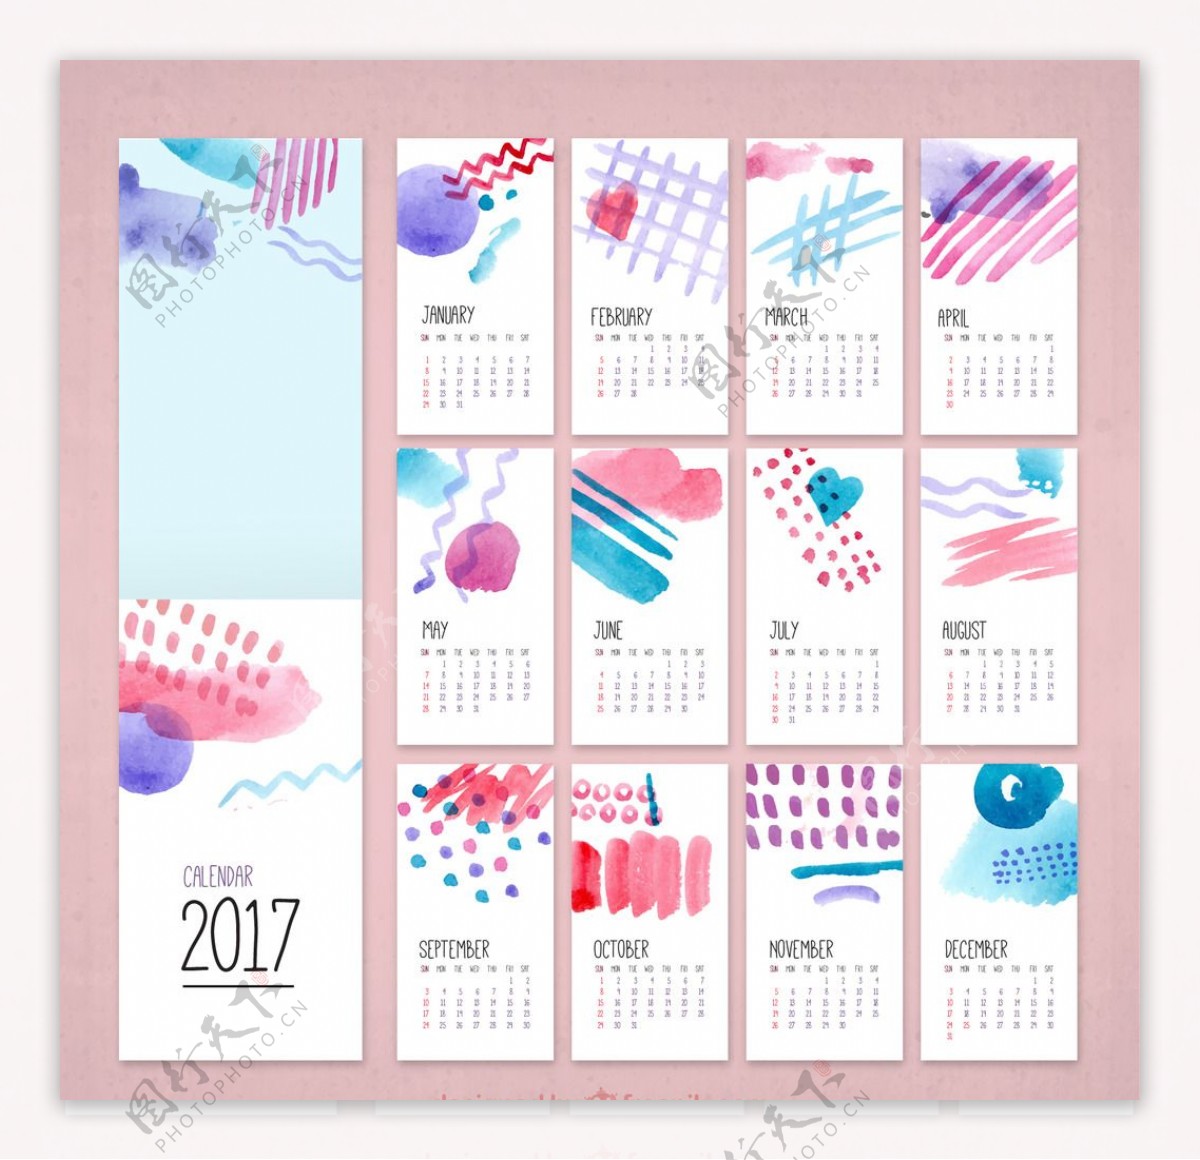 2017水彩風格月曆